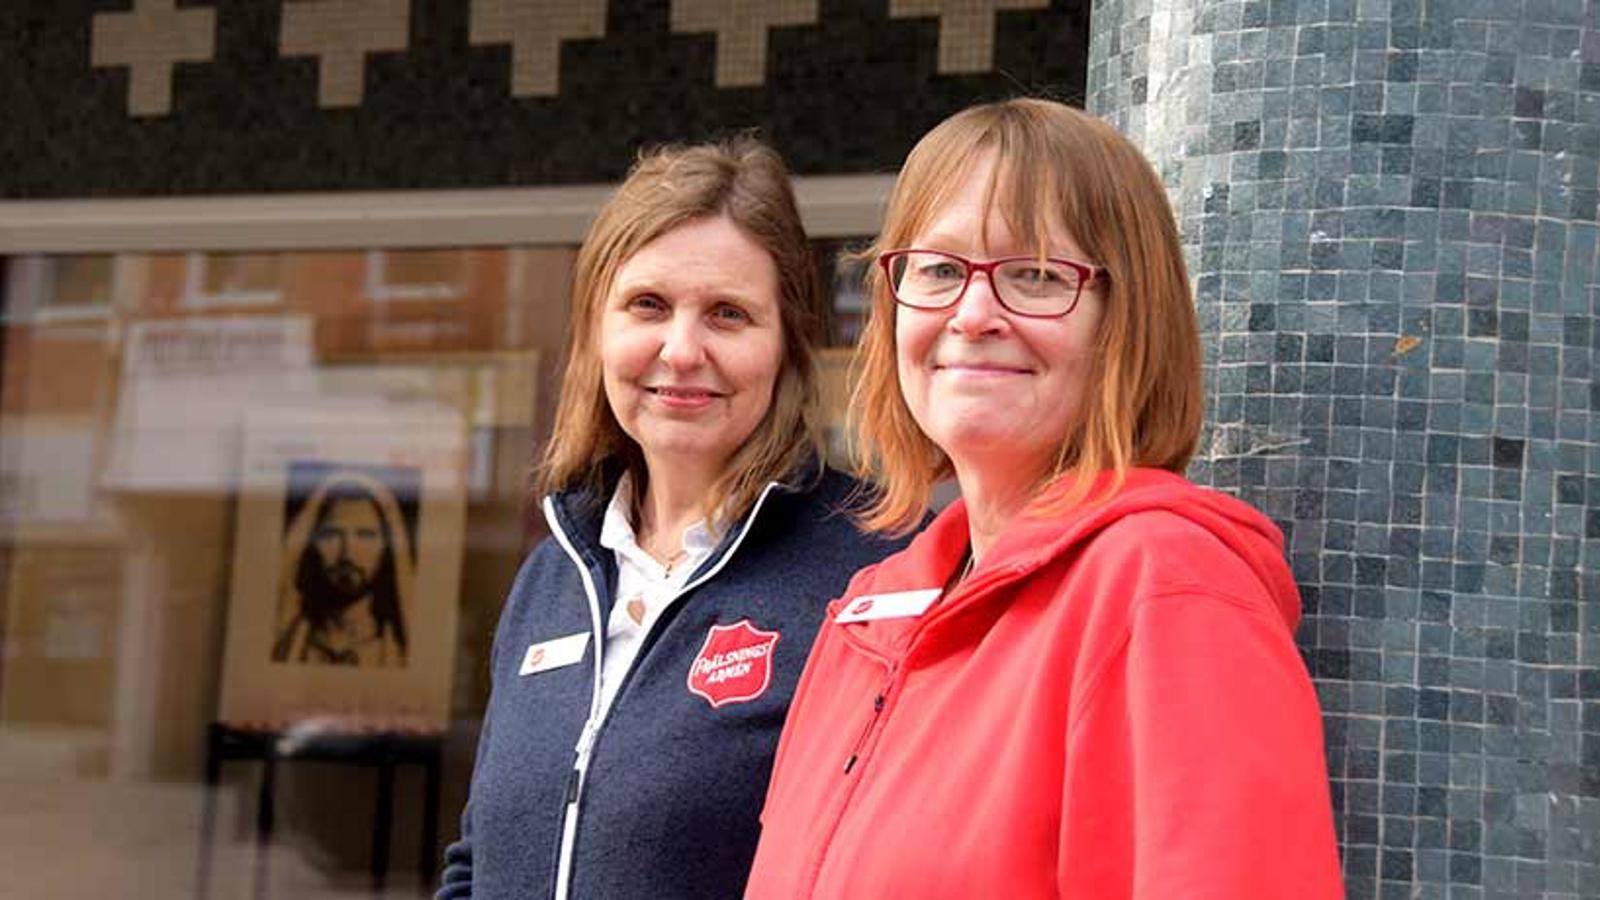 Susanna Nordberg och Elaine Tall Wenlöf som tillsammans ansvarar för det sociala arbetet vid kåren i Västerås. De tittar in i kameran och ler.